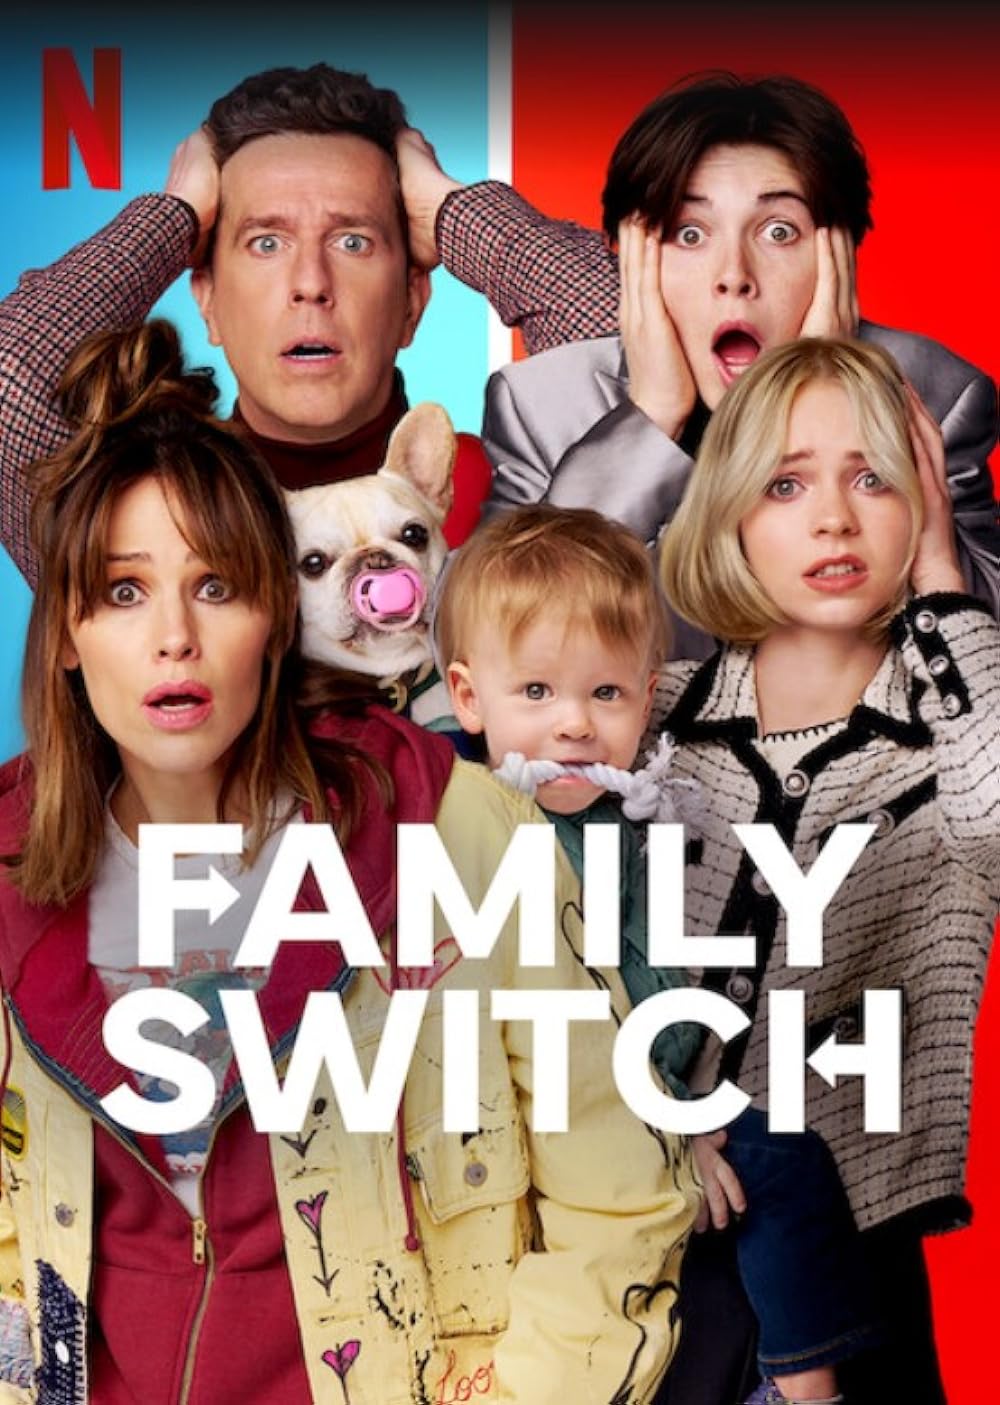 Οικογενειακη Ανταλλαγη / Family Switch (2023)